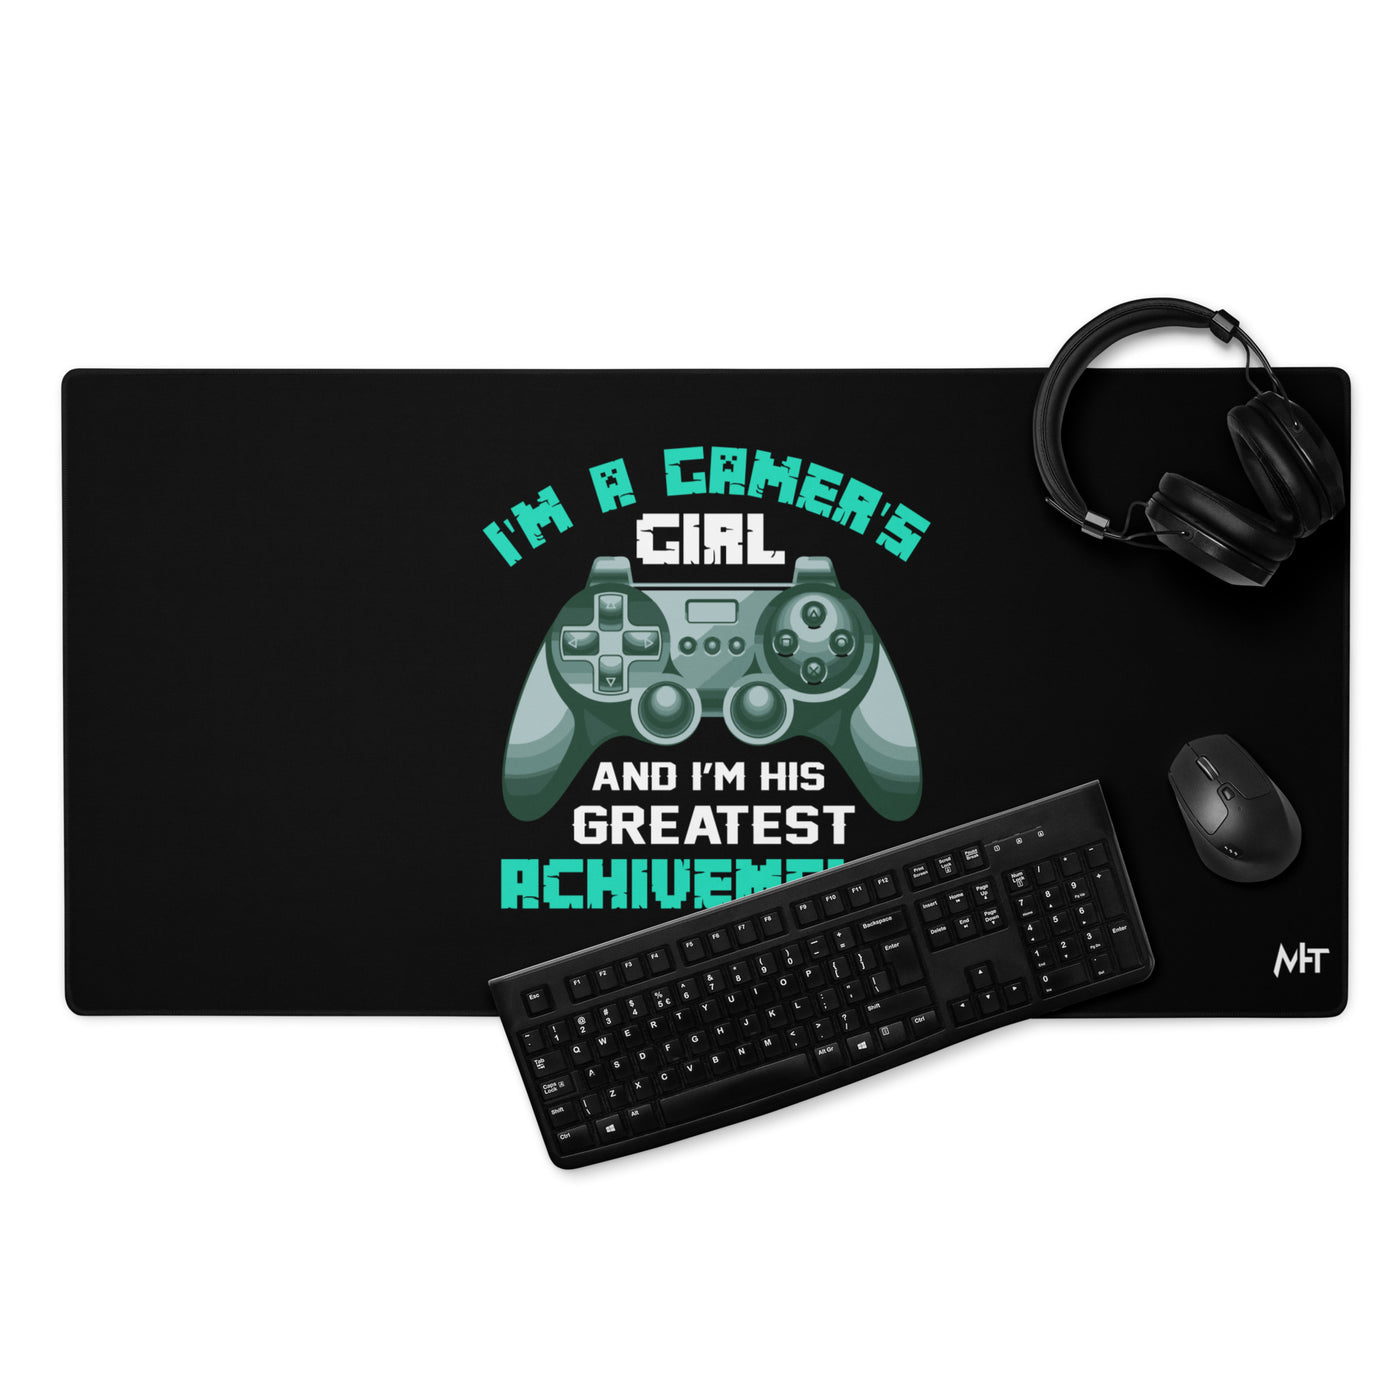 I am a Gamer's Girl - Desk Mat